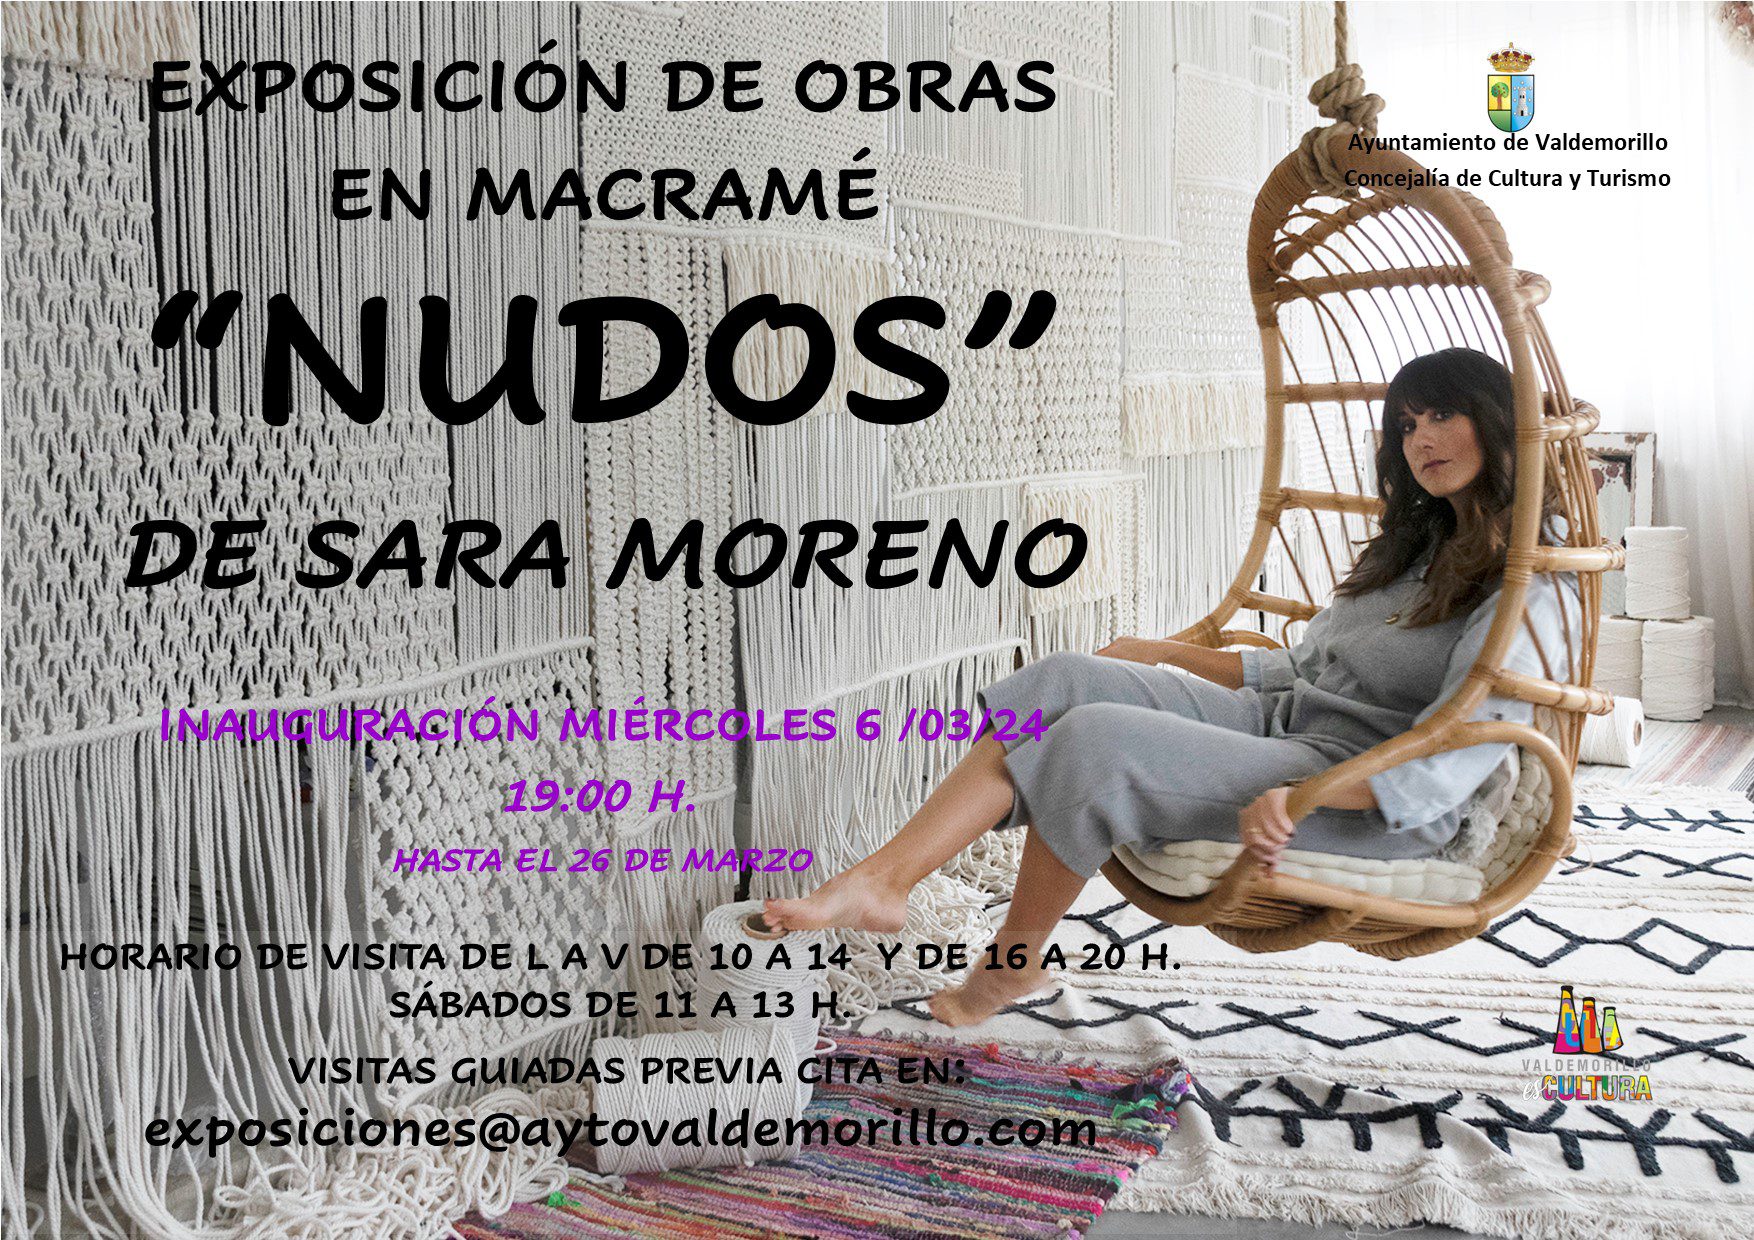 Exposición "Nudos" de Sara Moreno